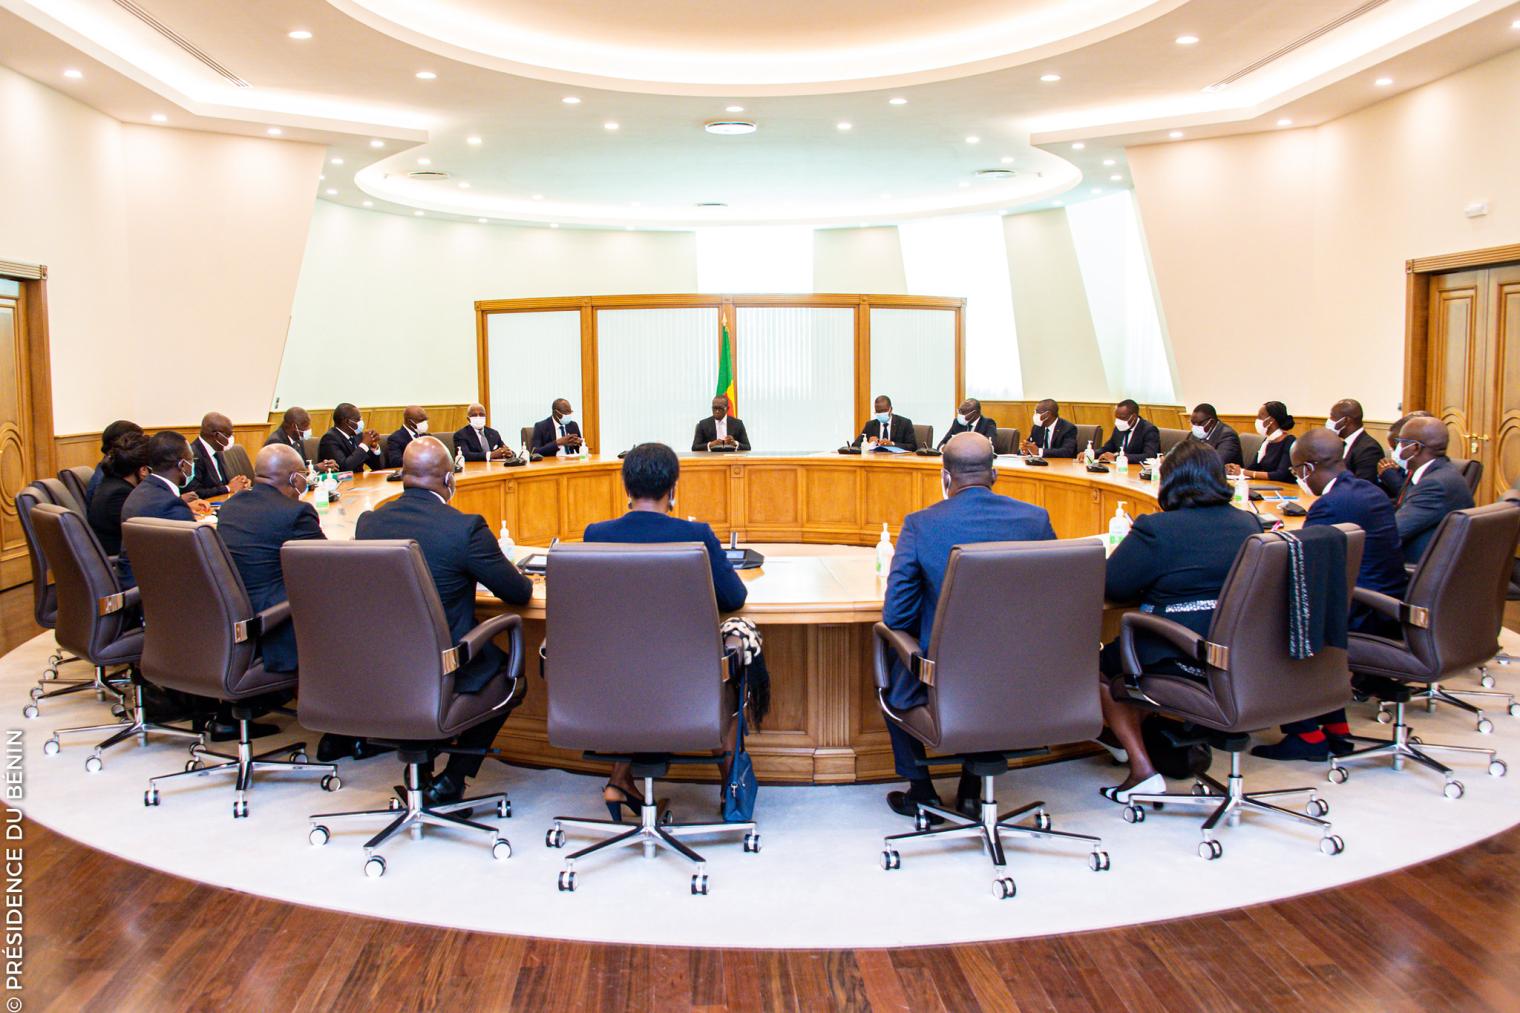 Bénin – Conseil des ministres : compte rendu de la session du 29 mars 2023